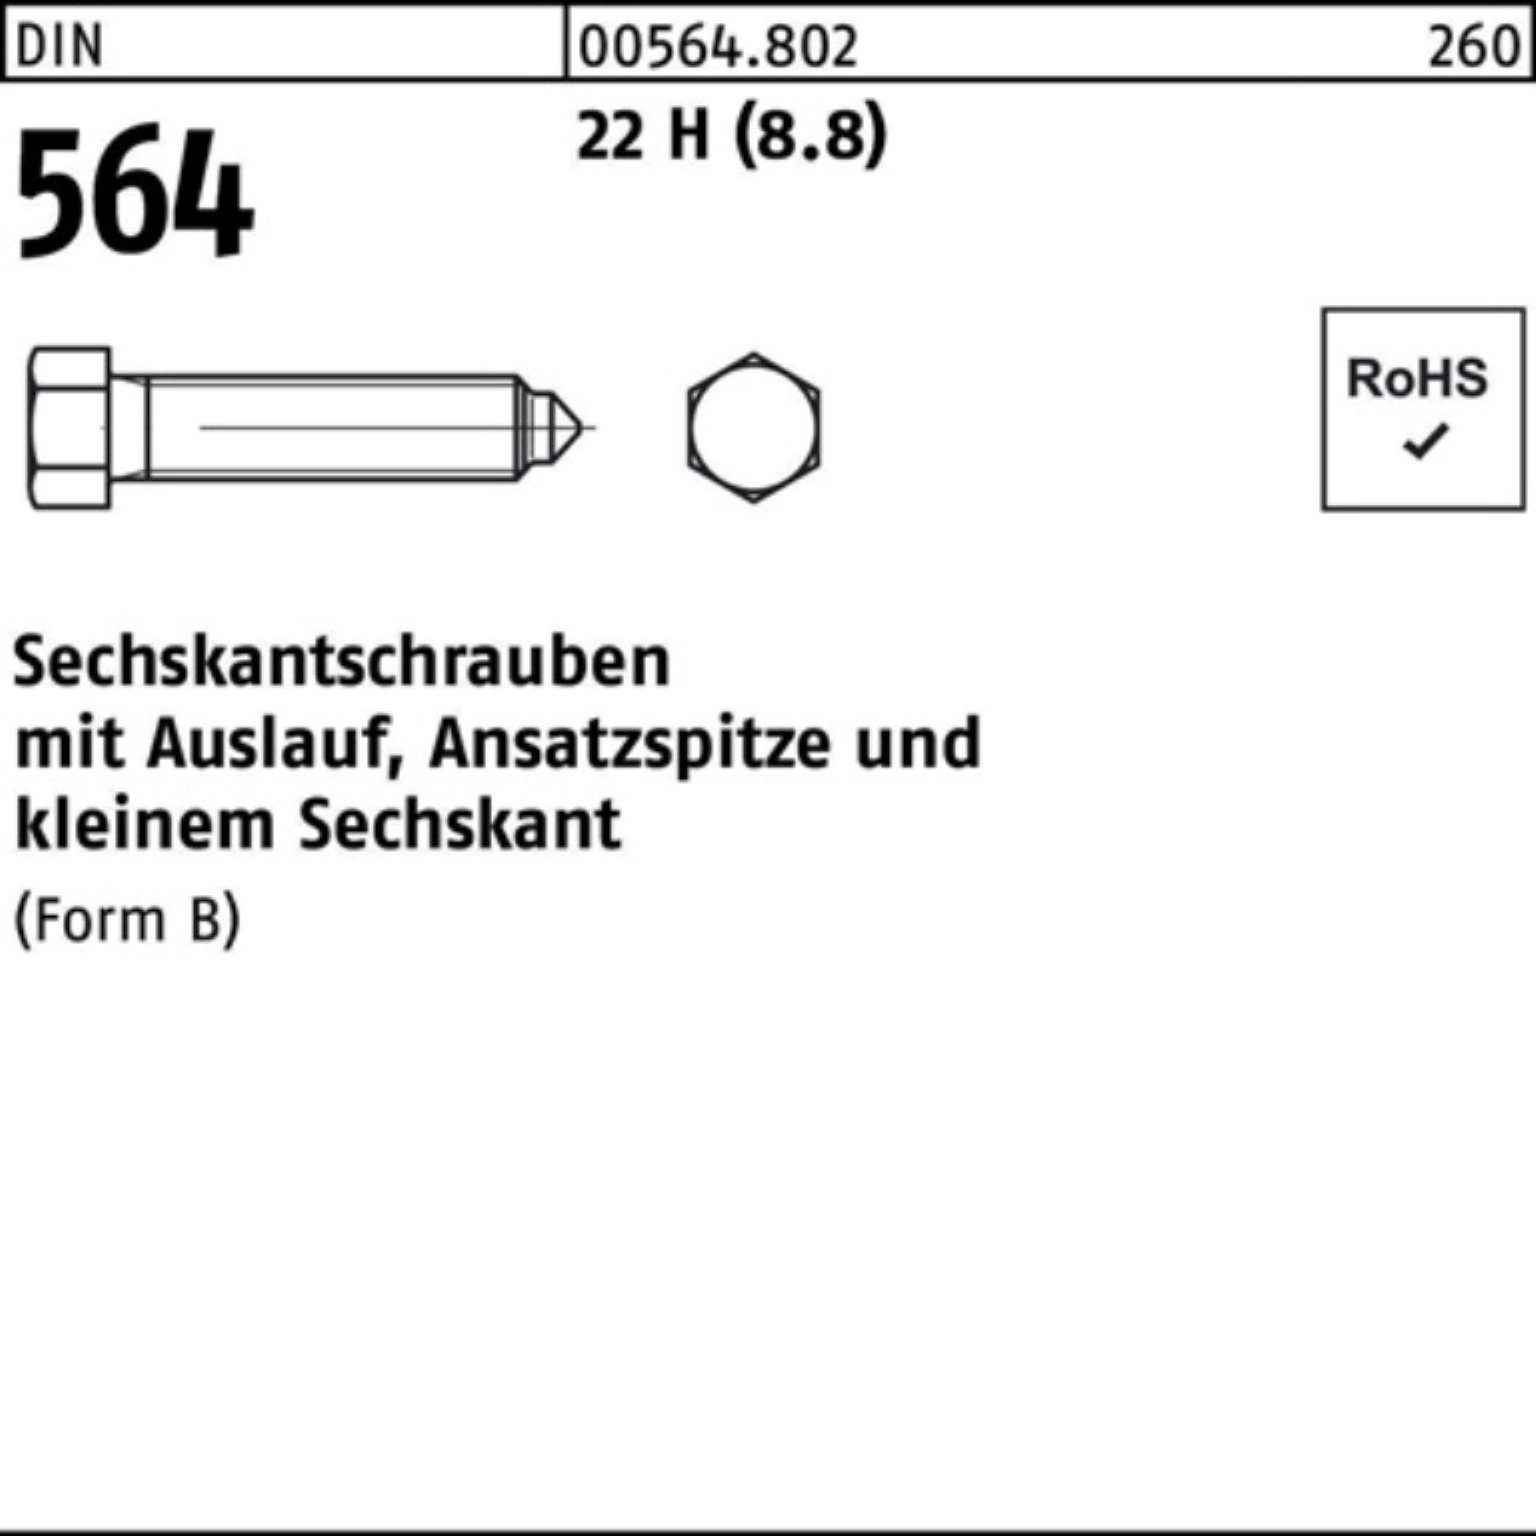 Reyher Sechskantschraube 100er Pack Sechskantschraube DIN 564 Ansatzspitze/Auslauf BM 6x 20 22